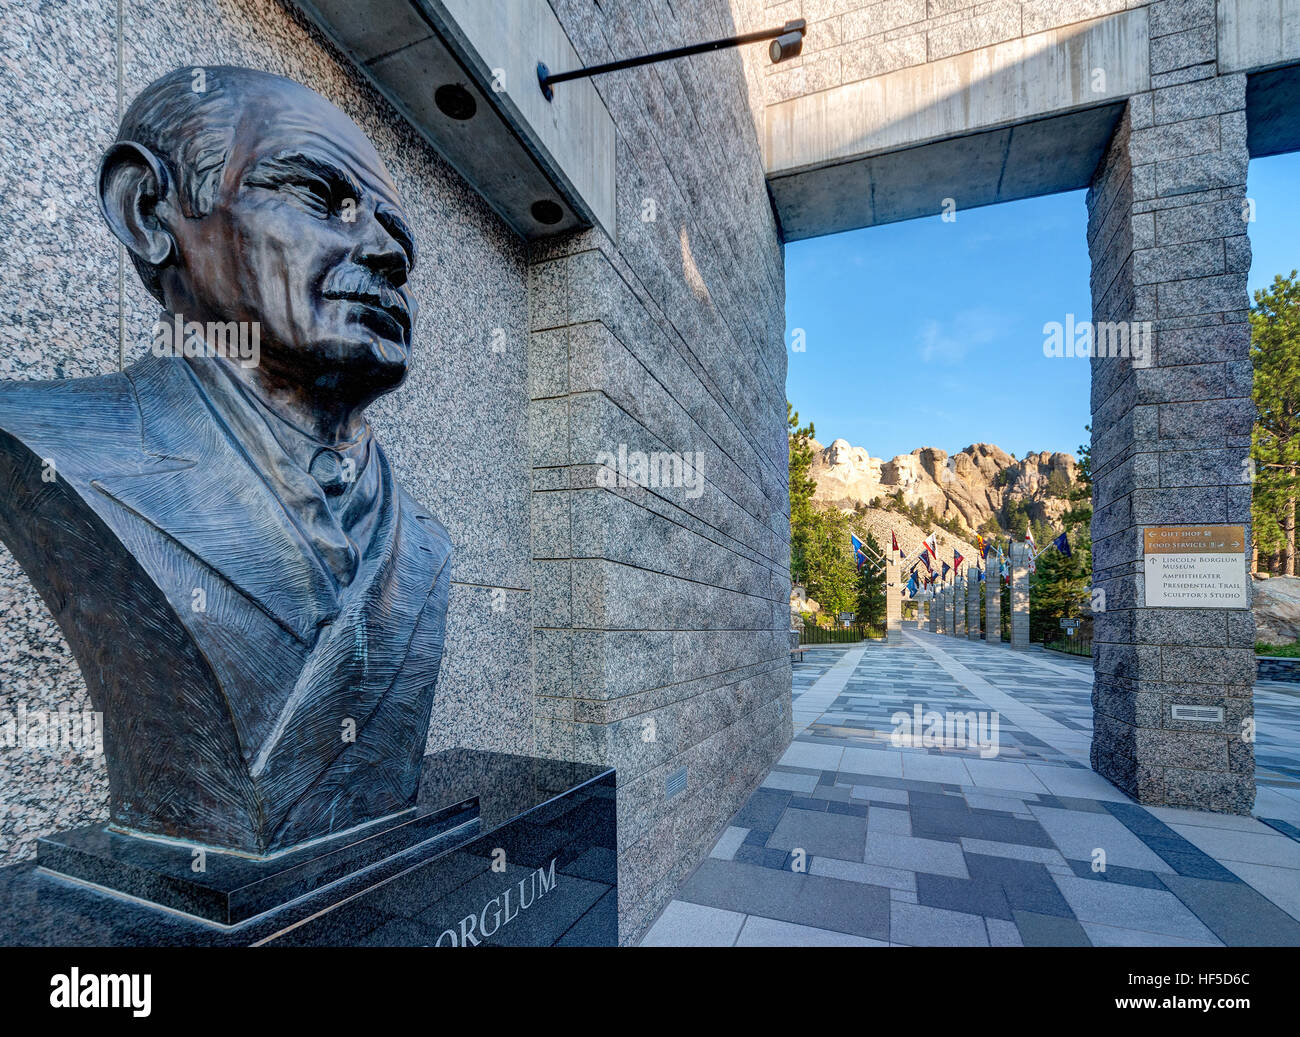 Monte Rushmore Memorial Nacional del Centro de Visitantes con retrato busto del escultor Gutzon Borglum del Monte Rushmore, visible en la distancia. Foto de stock